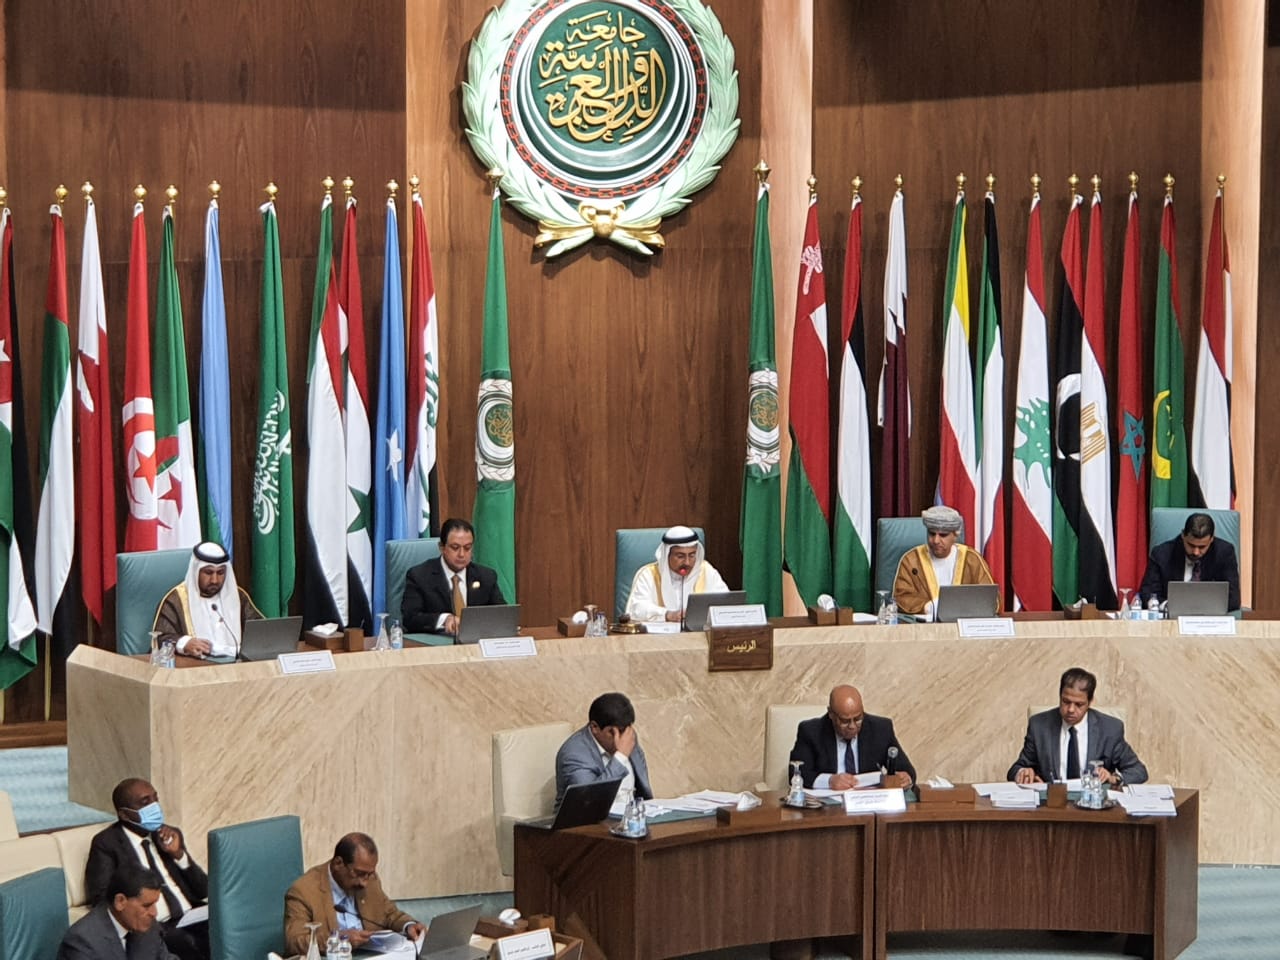   البرلمان العربي: التدخلات الخارجية التي تتربص بالعالم العربي مسعى مقيت نرفضه ونتصدى له